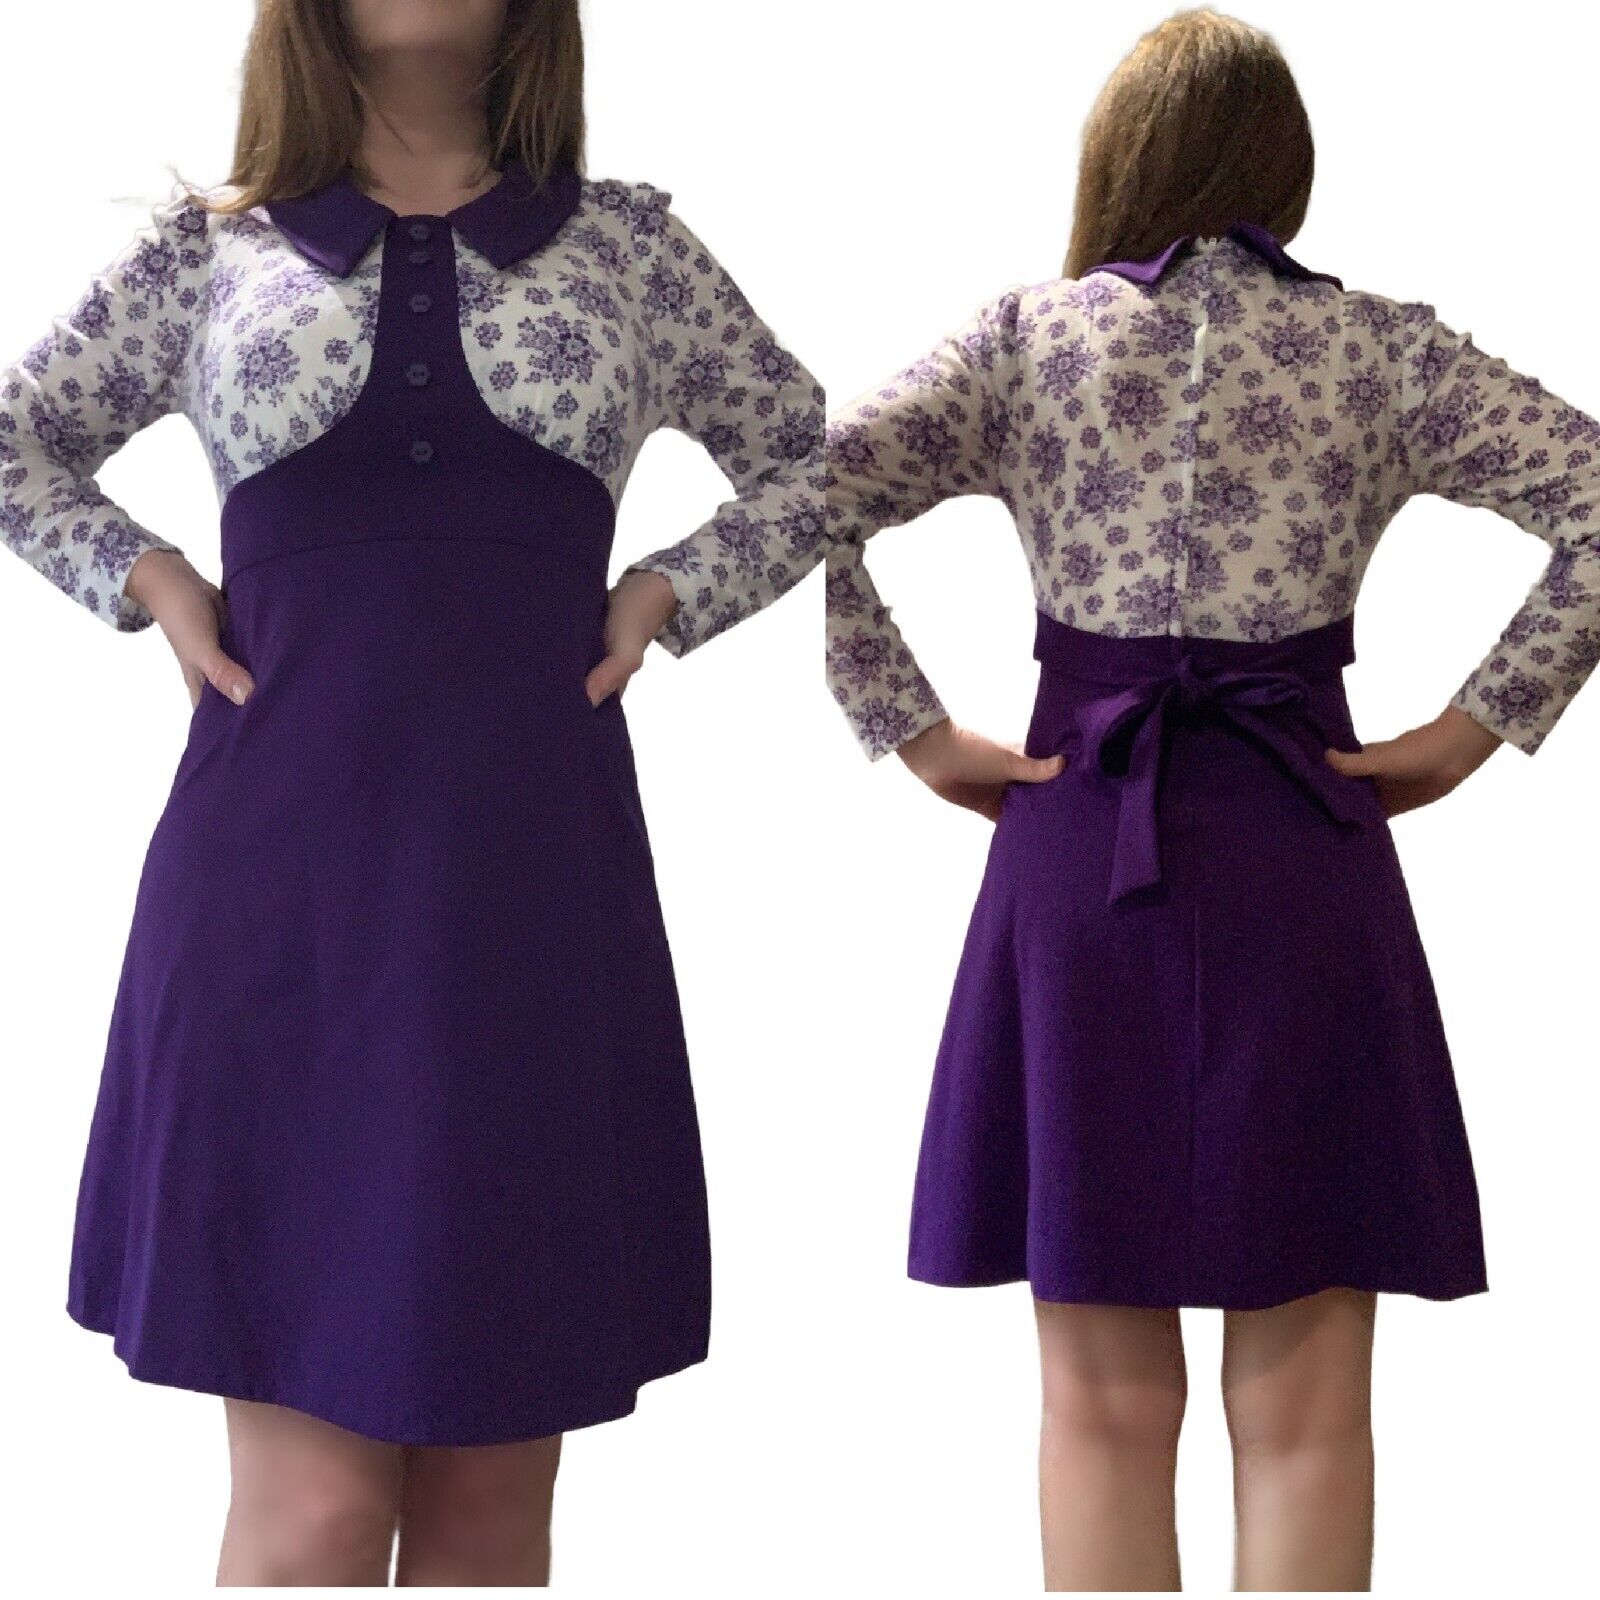 S Vtg 70s MOD Purple Long Sleeve Floral Colorbloc… - image 1